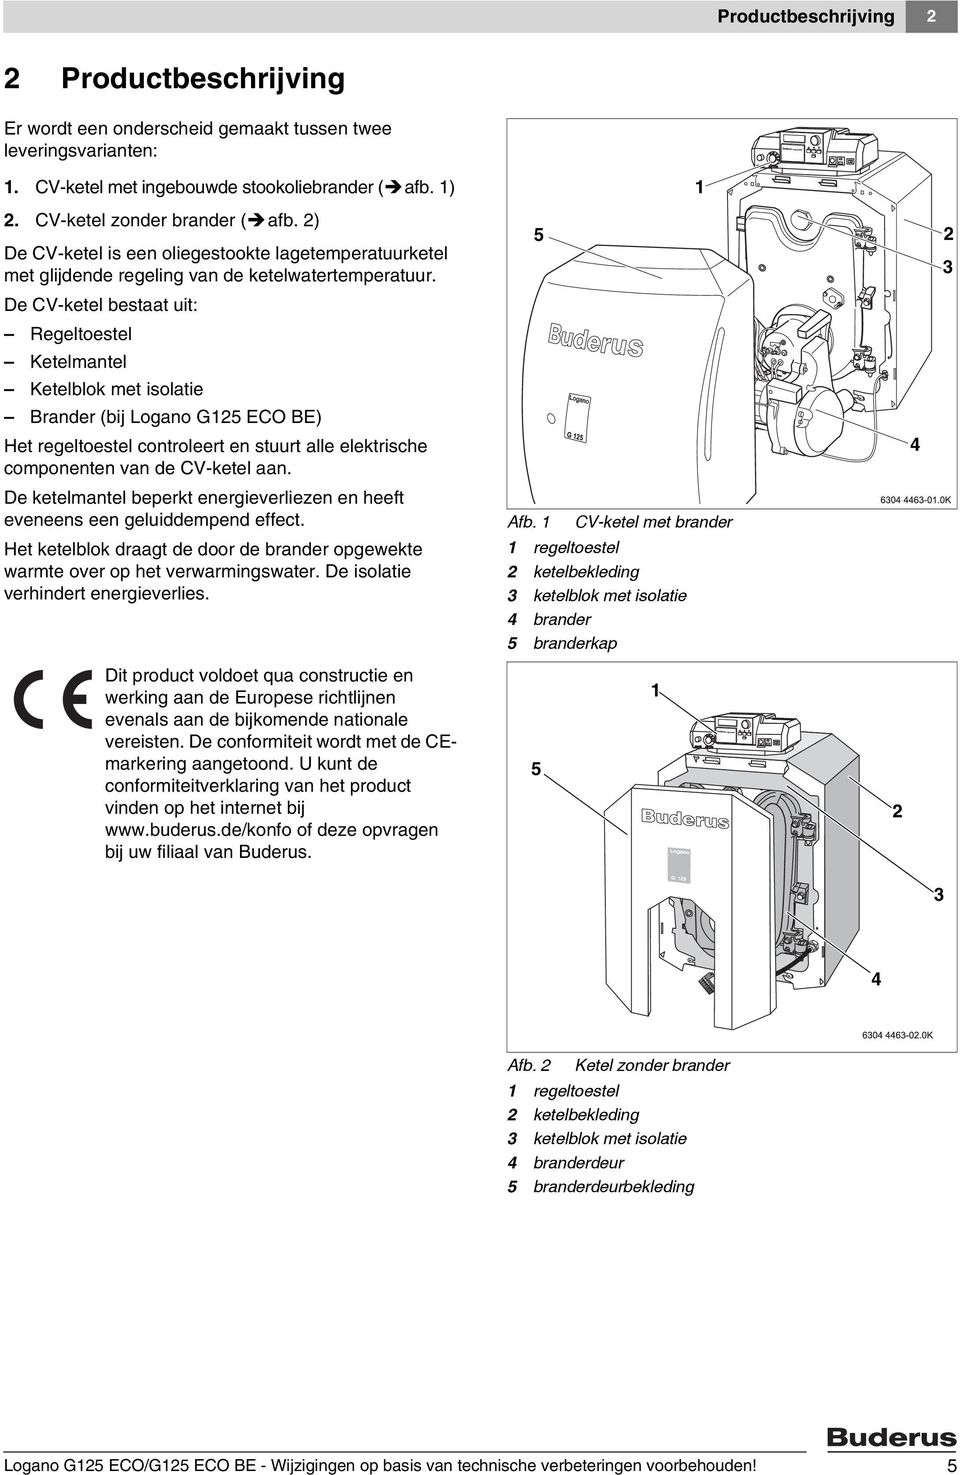 5 2 3 De CV-ketel bestaat uit: Regeltoestel Ketelmantel Ketelblok met isolatie Brander (bij Logano G125 ECO BE) Het regeltoestel controleert en stuurt alle elektrische componenten van de CV-ketel aan.